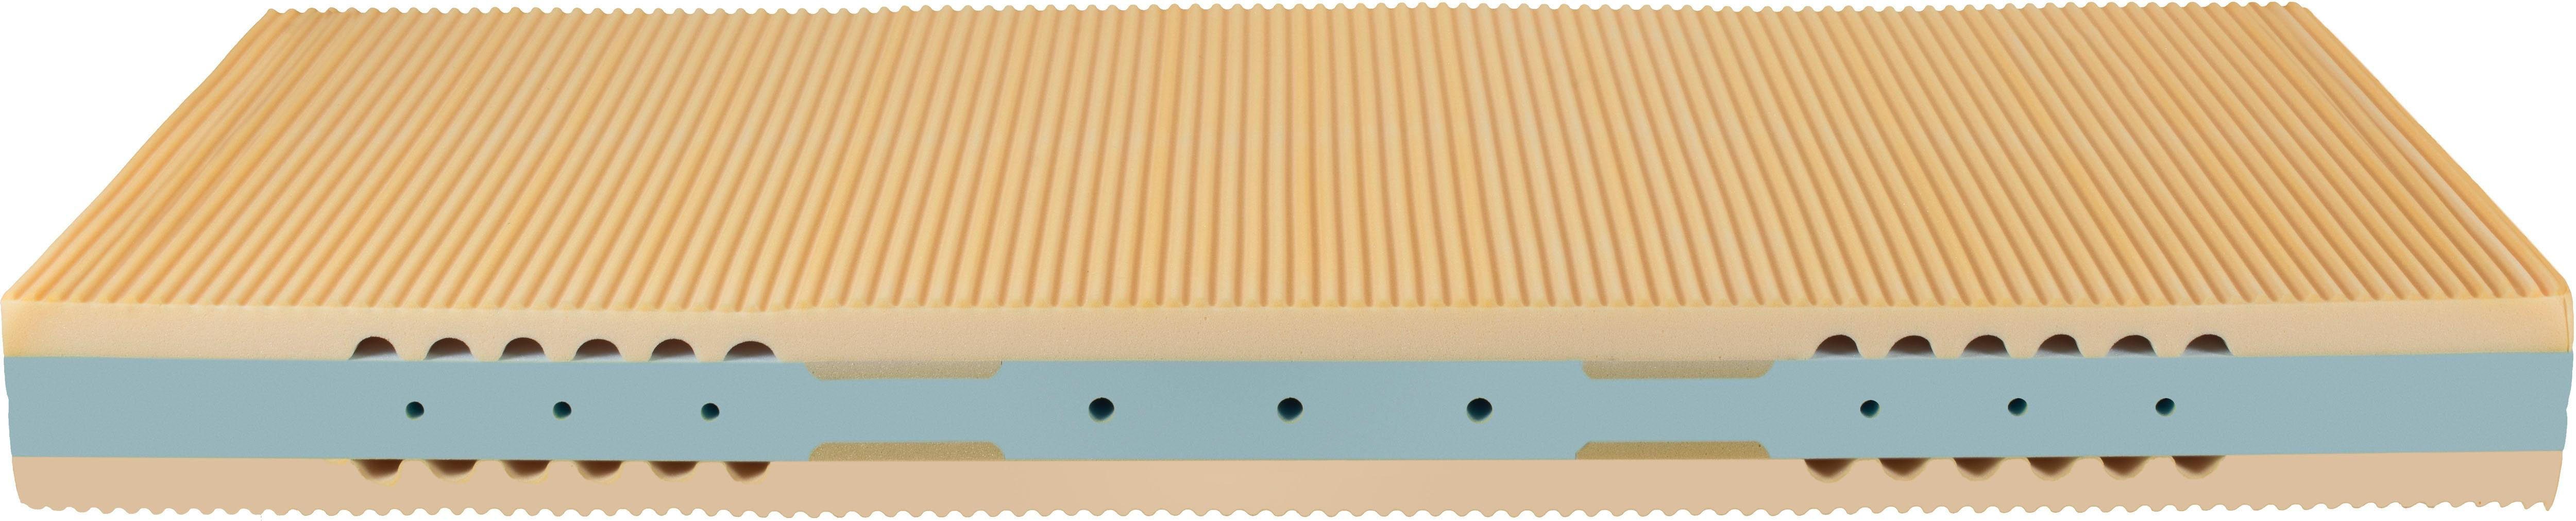 Kaltschaummatratze Pro punktelastische Größen, Beco, in Medical, 90x200 und cm cm weiteren Matratze Matratze hoch, 20